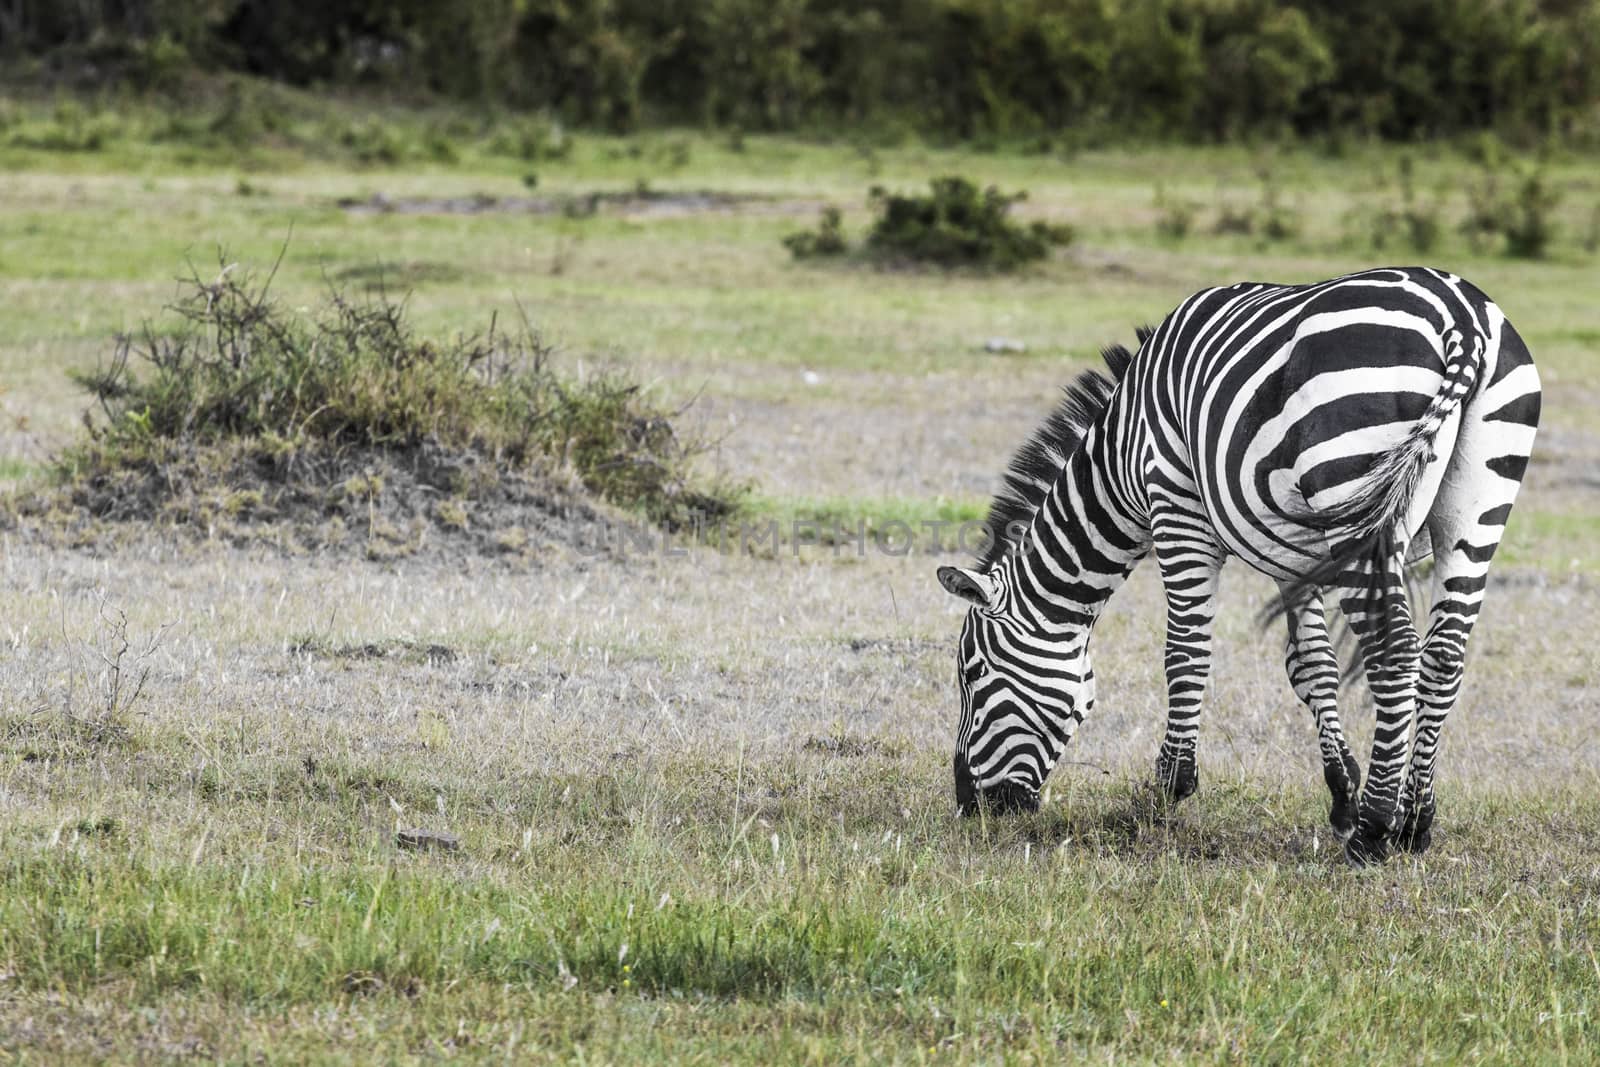 Zebra in National Park. Africa, Kenya by mariusz_prusaczyk